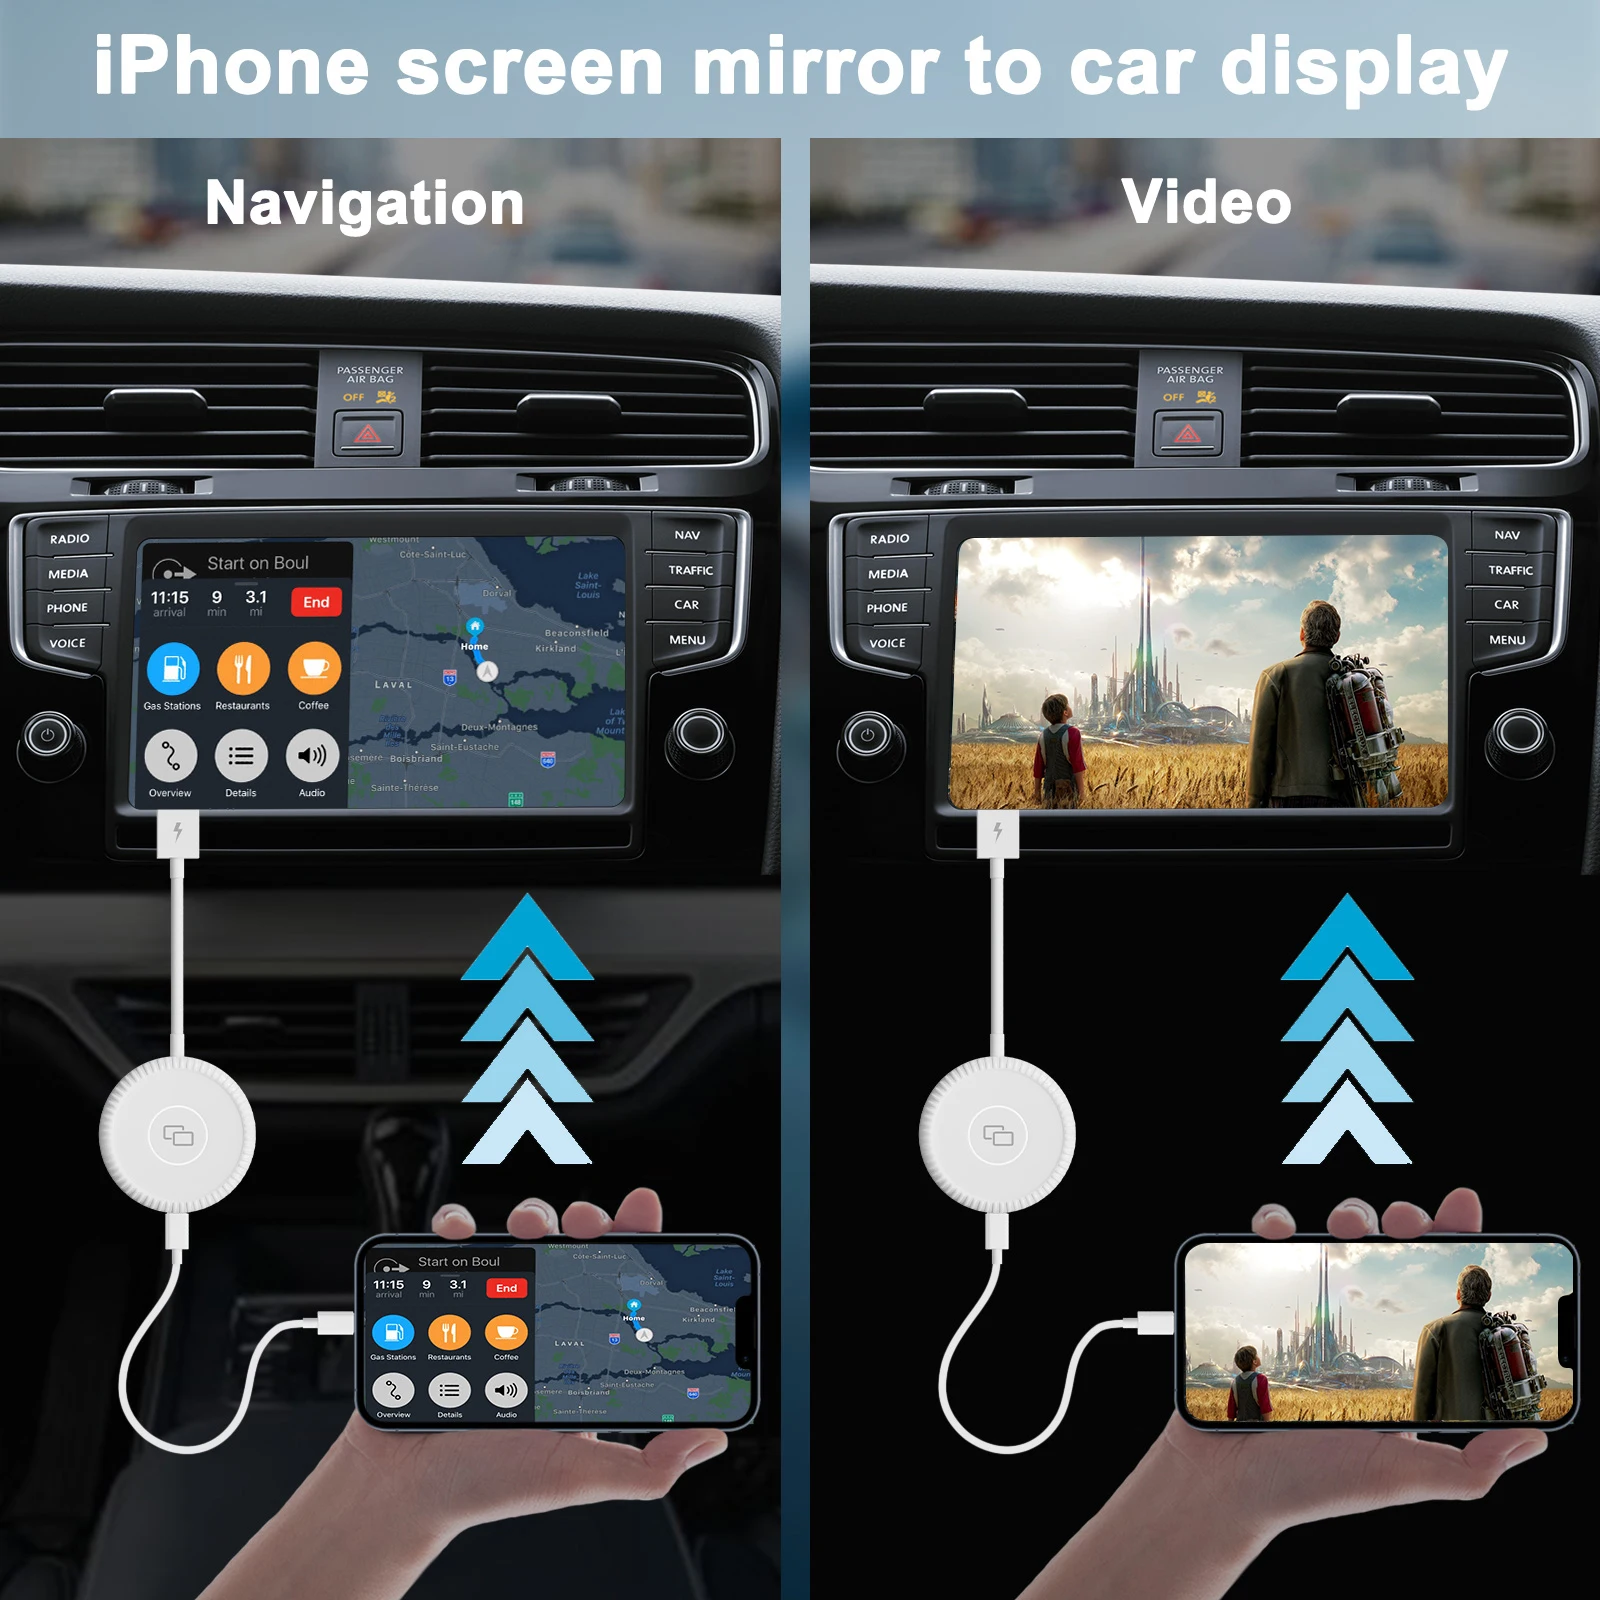 Огледален опънат Ключ Carplay Adapter/Ключ за заводски Жични автомобили CarPlay С Поддръжка на YouTube Navigation Media Player Mirrorlink